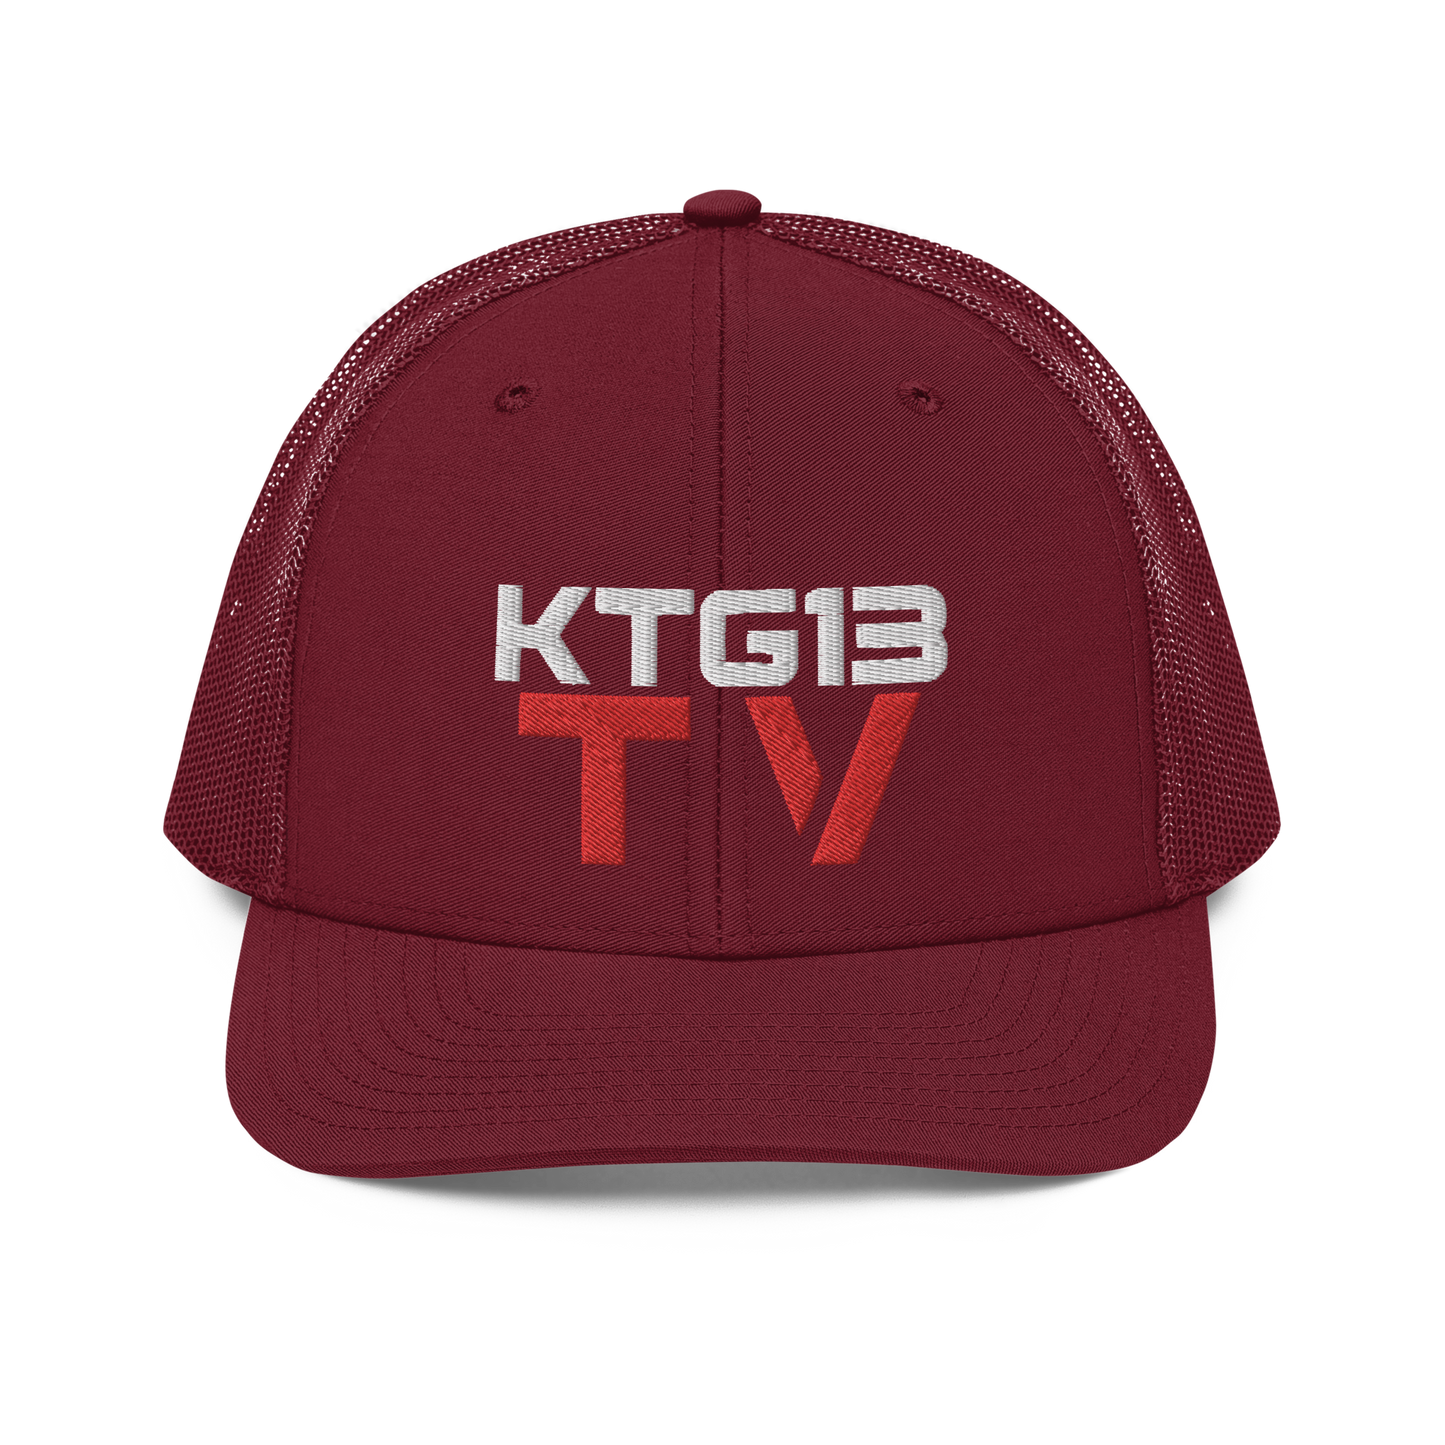 KTG13 TV Snapback Trucker Cap